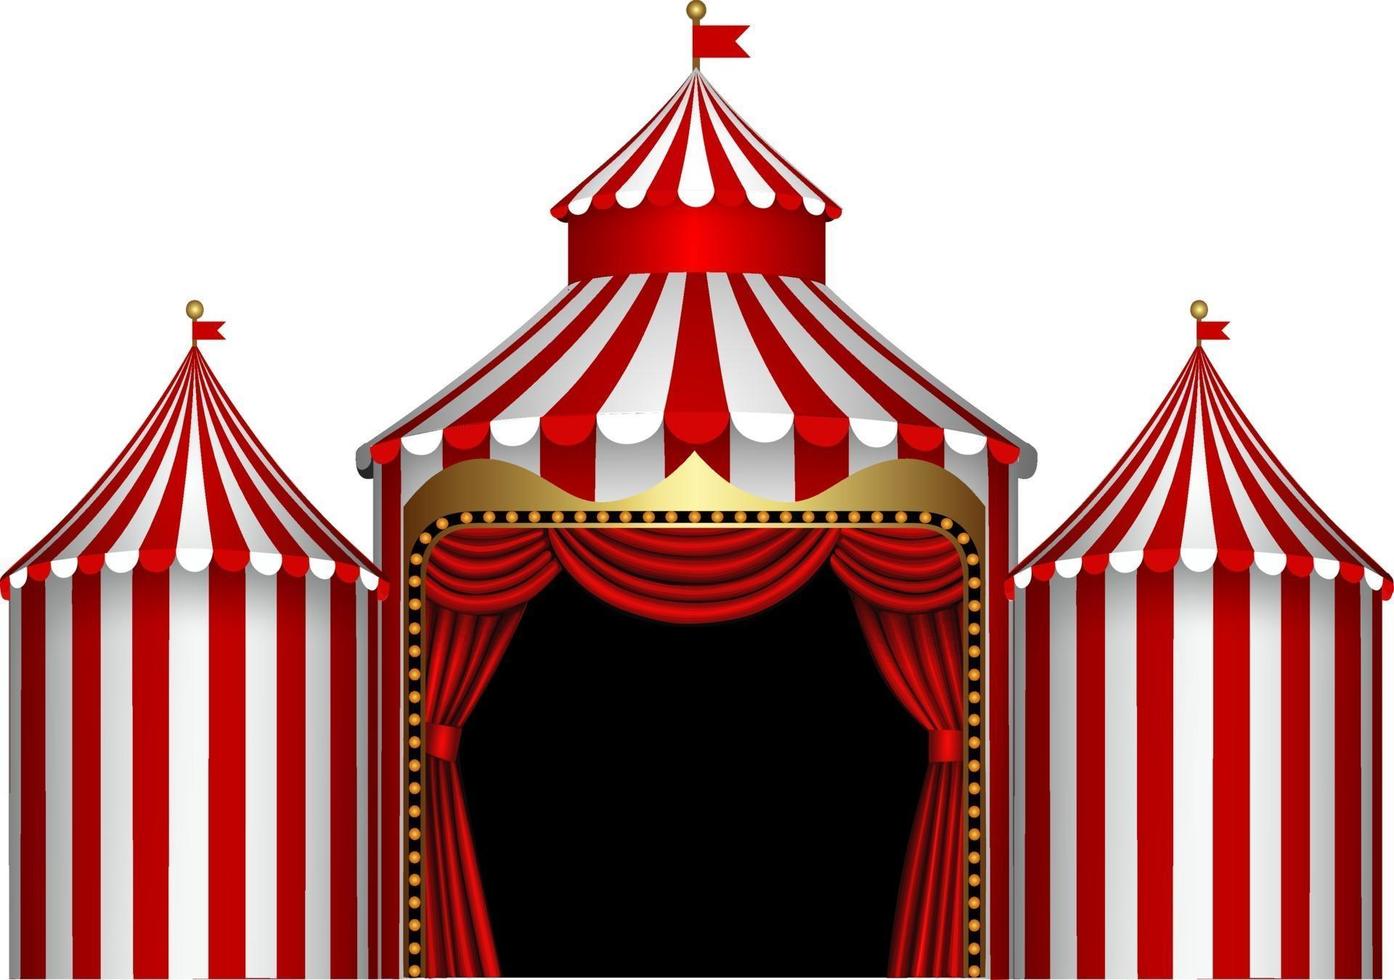 palco de circo isolado com listras vermelhas e brancas e cortina vermelha vetor